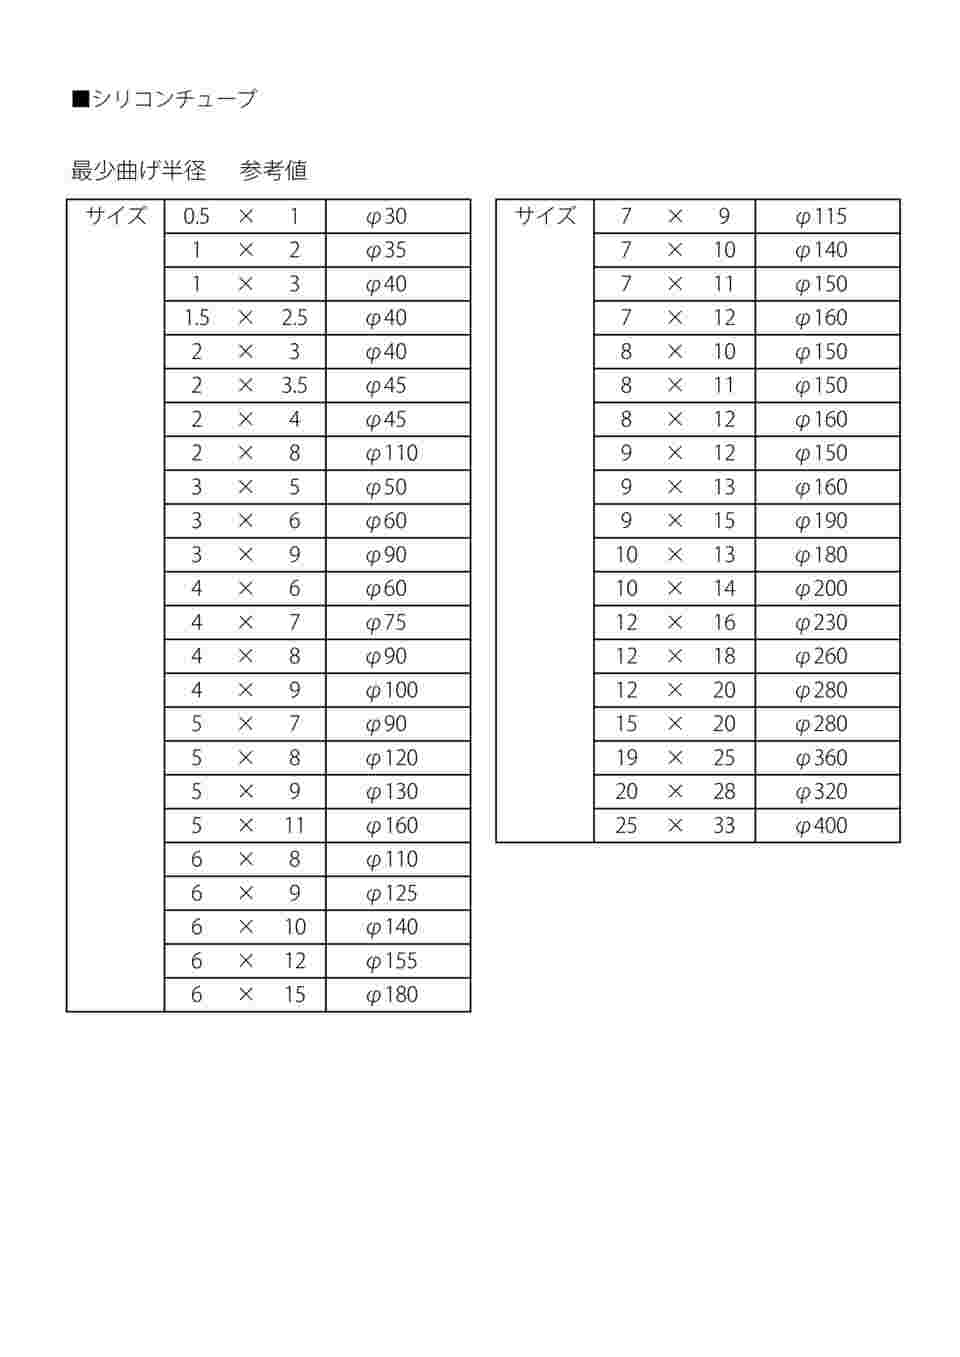 9-869-25 ラボラン(R)シリコンチューブ 12×16 1巻(11m) 【AXEL】 アズワン